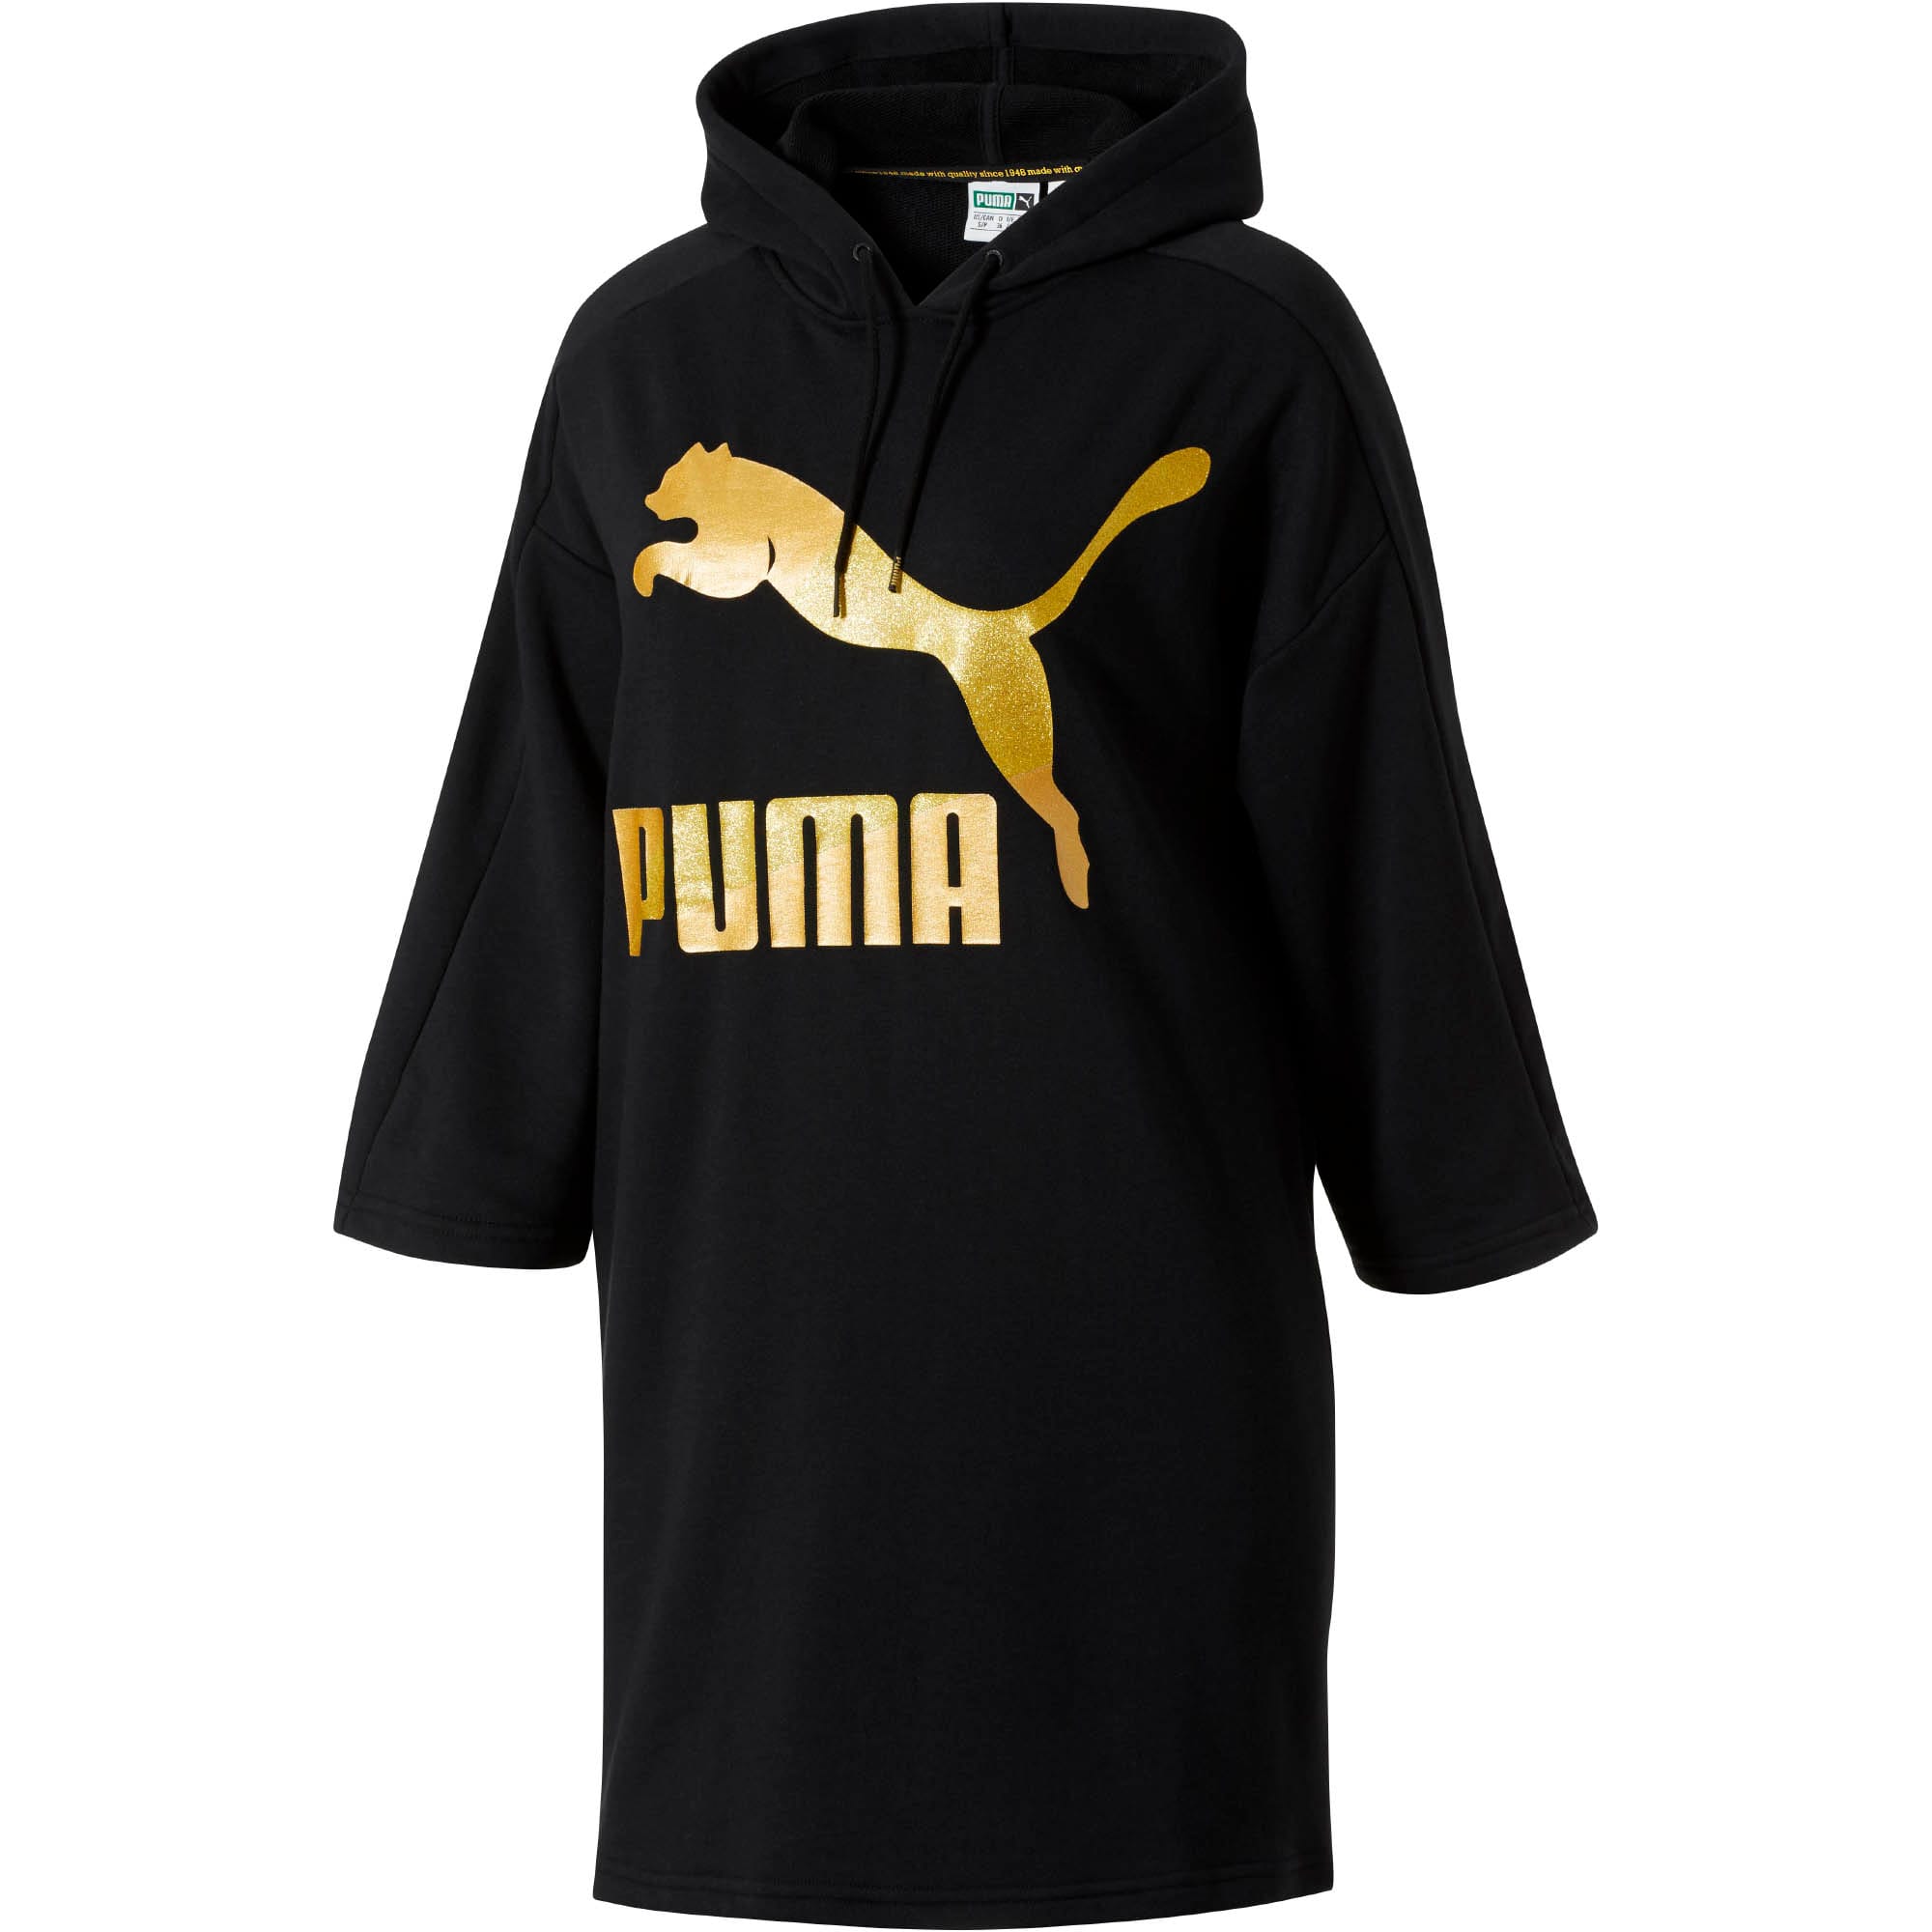 puma clothing com